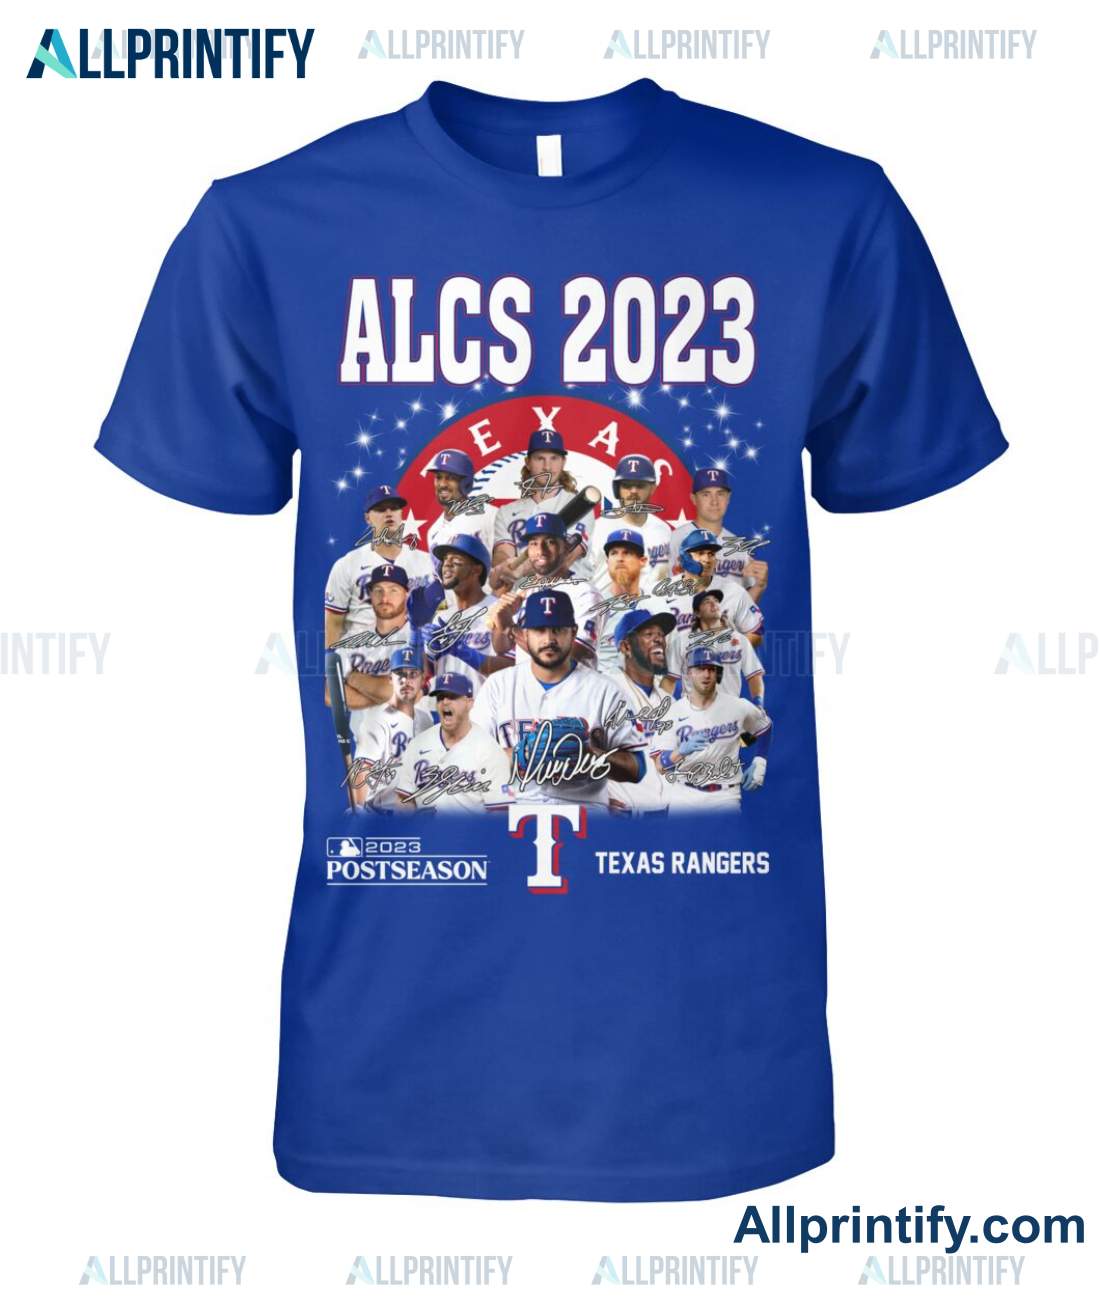 Alcs 2023 Postseason Texas Rangers Signatures Shirt a